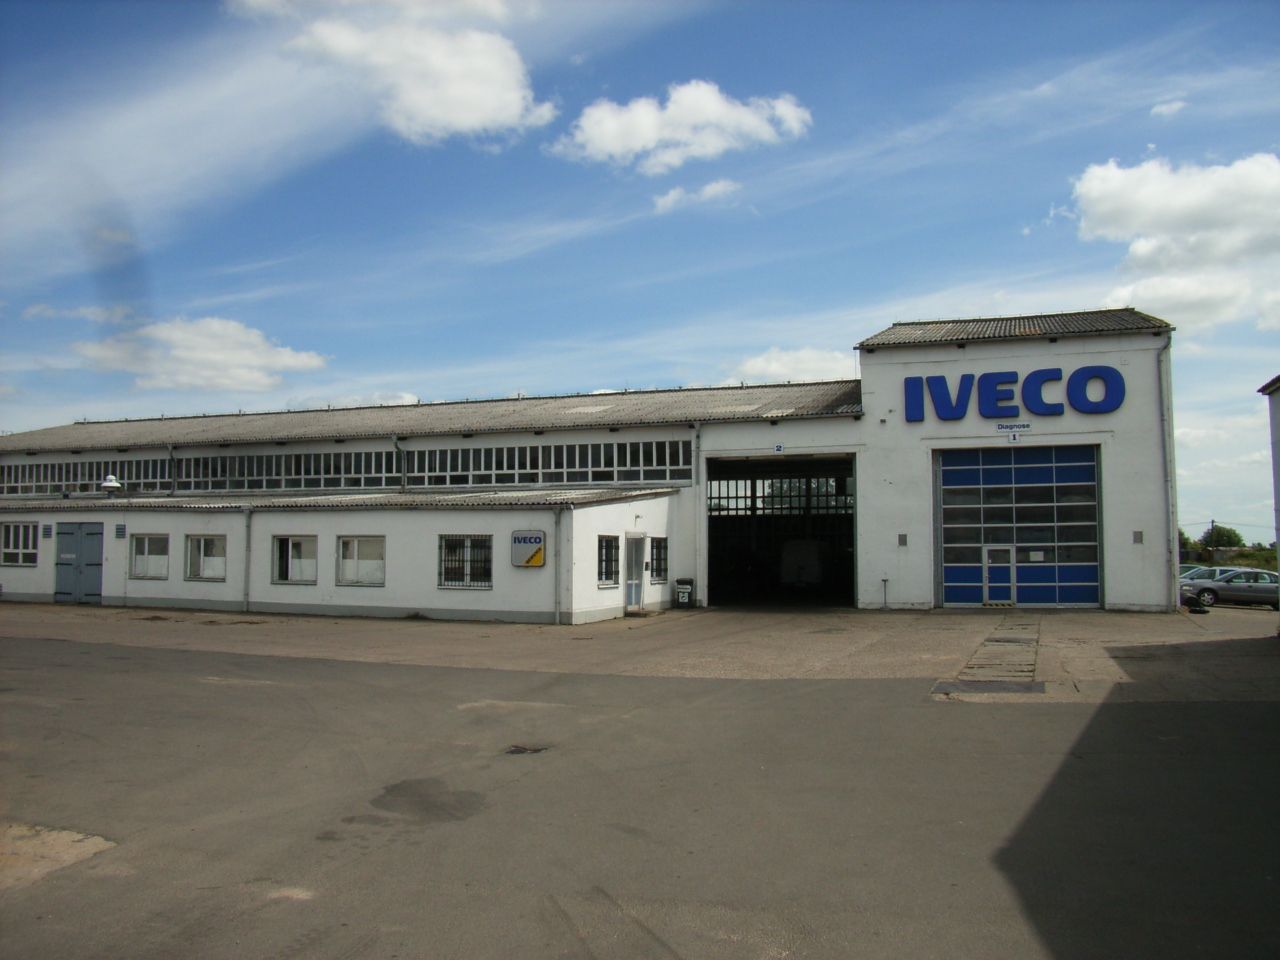 ein großes weißes Gebäude mit dem Logo Iveco darauf